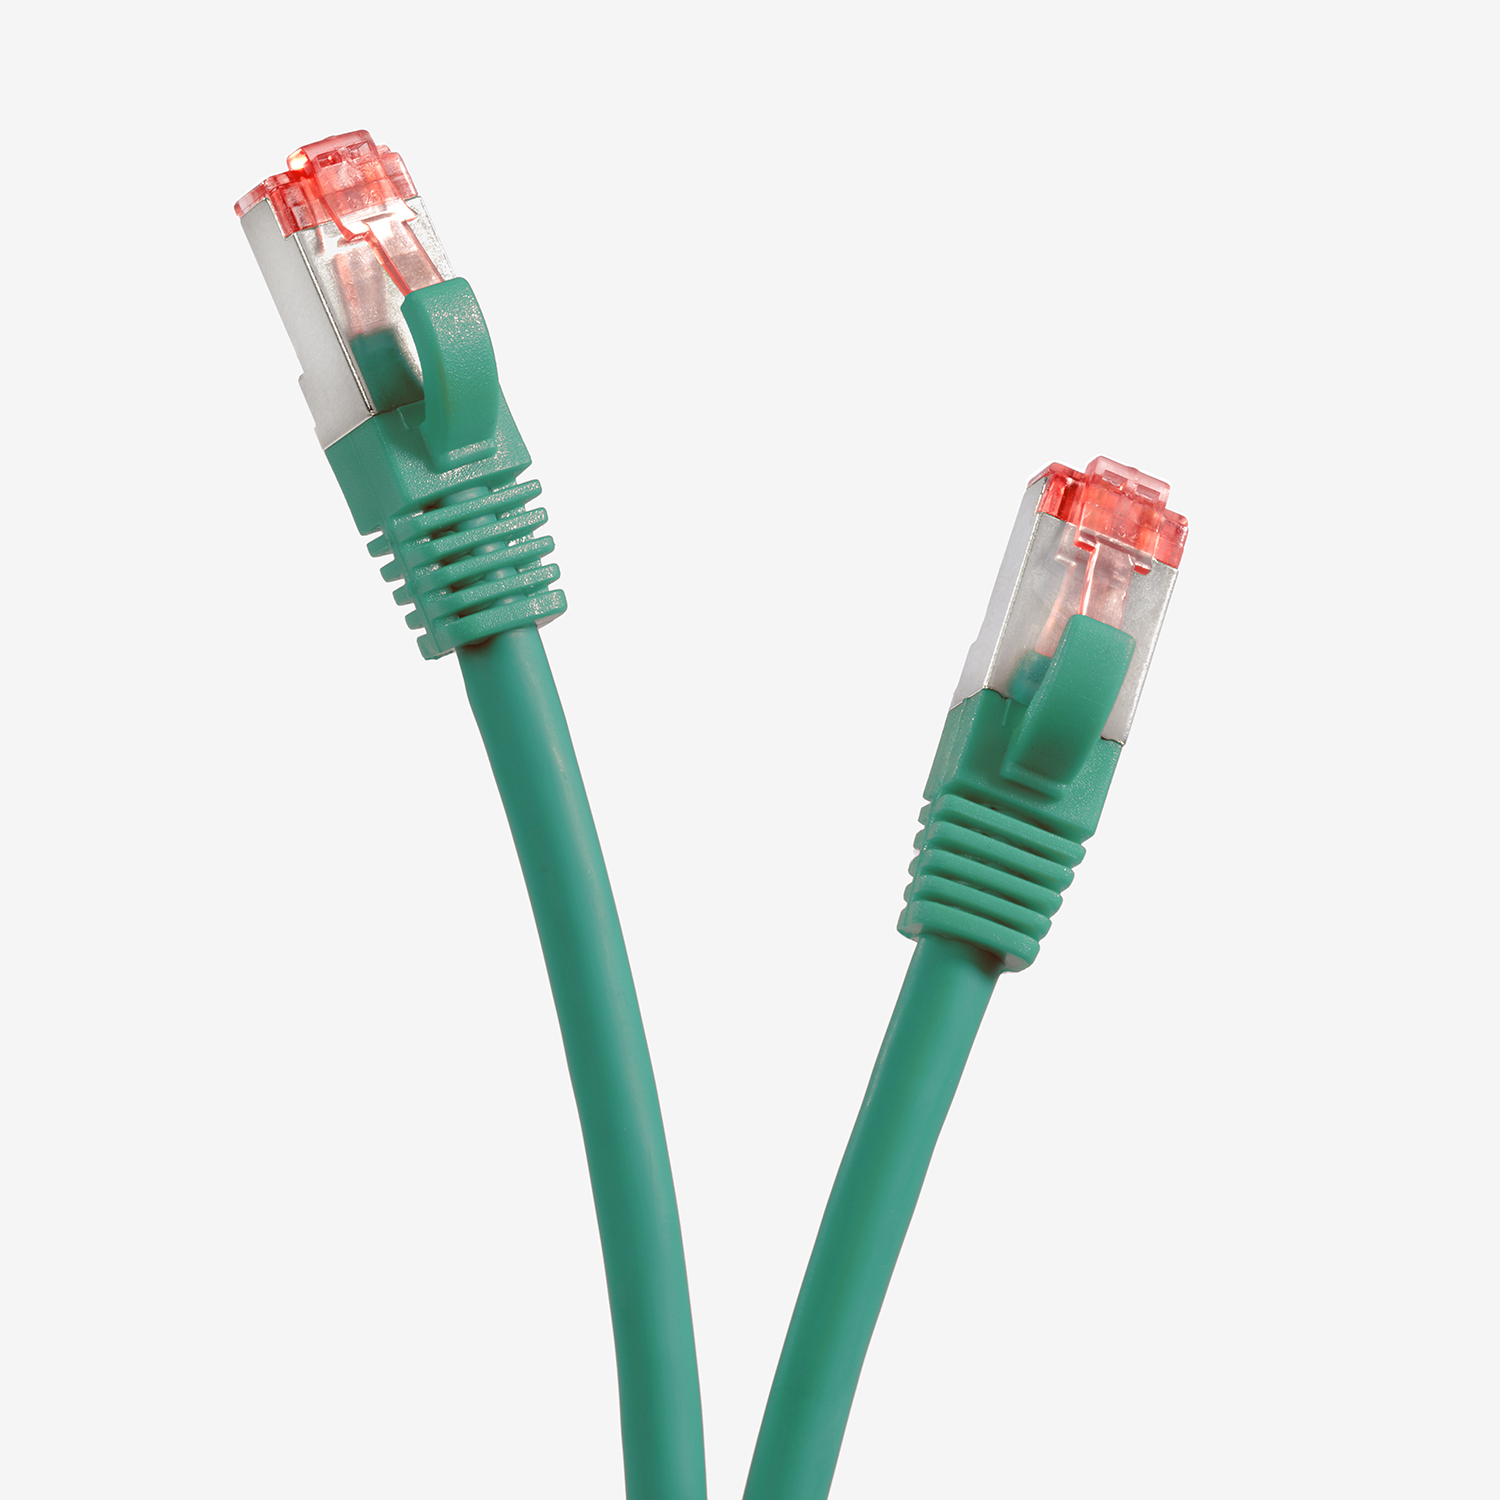 TPFNET 0,50m Patchkabel m / 1000Mbit, grün, Netzwerkkabel Netzwerkkabel, S/FTP 0,5